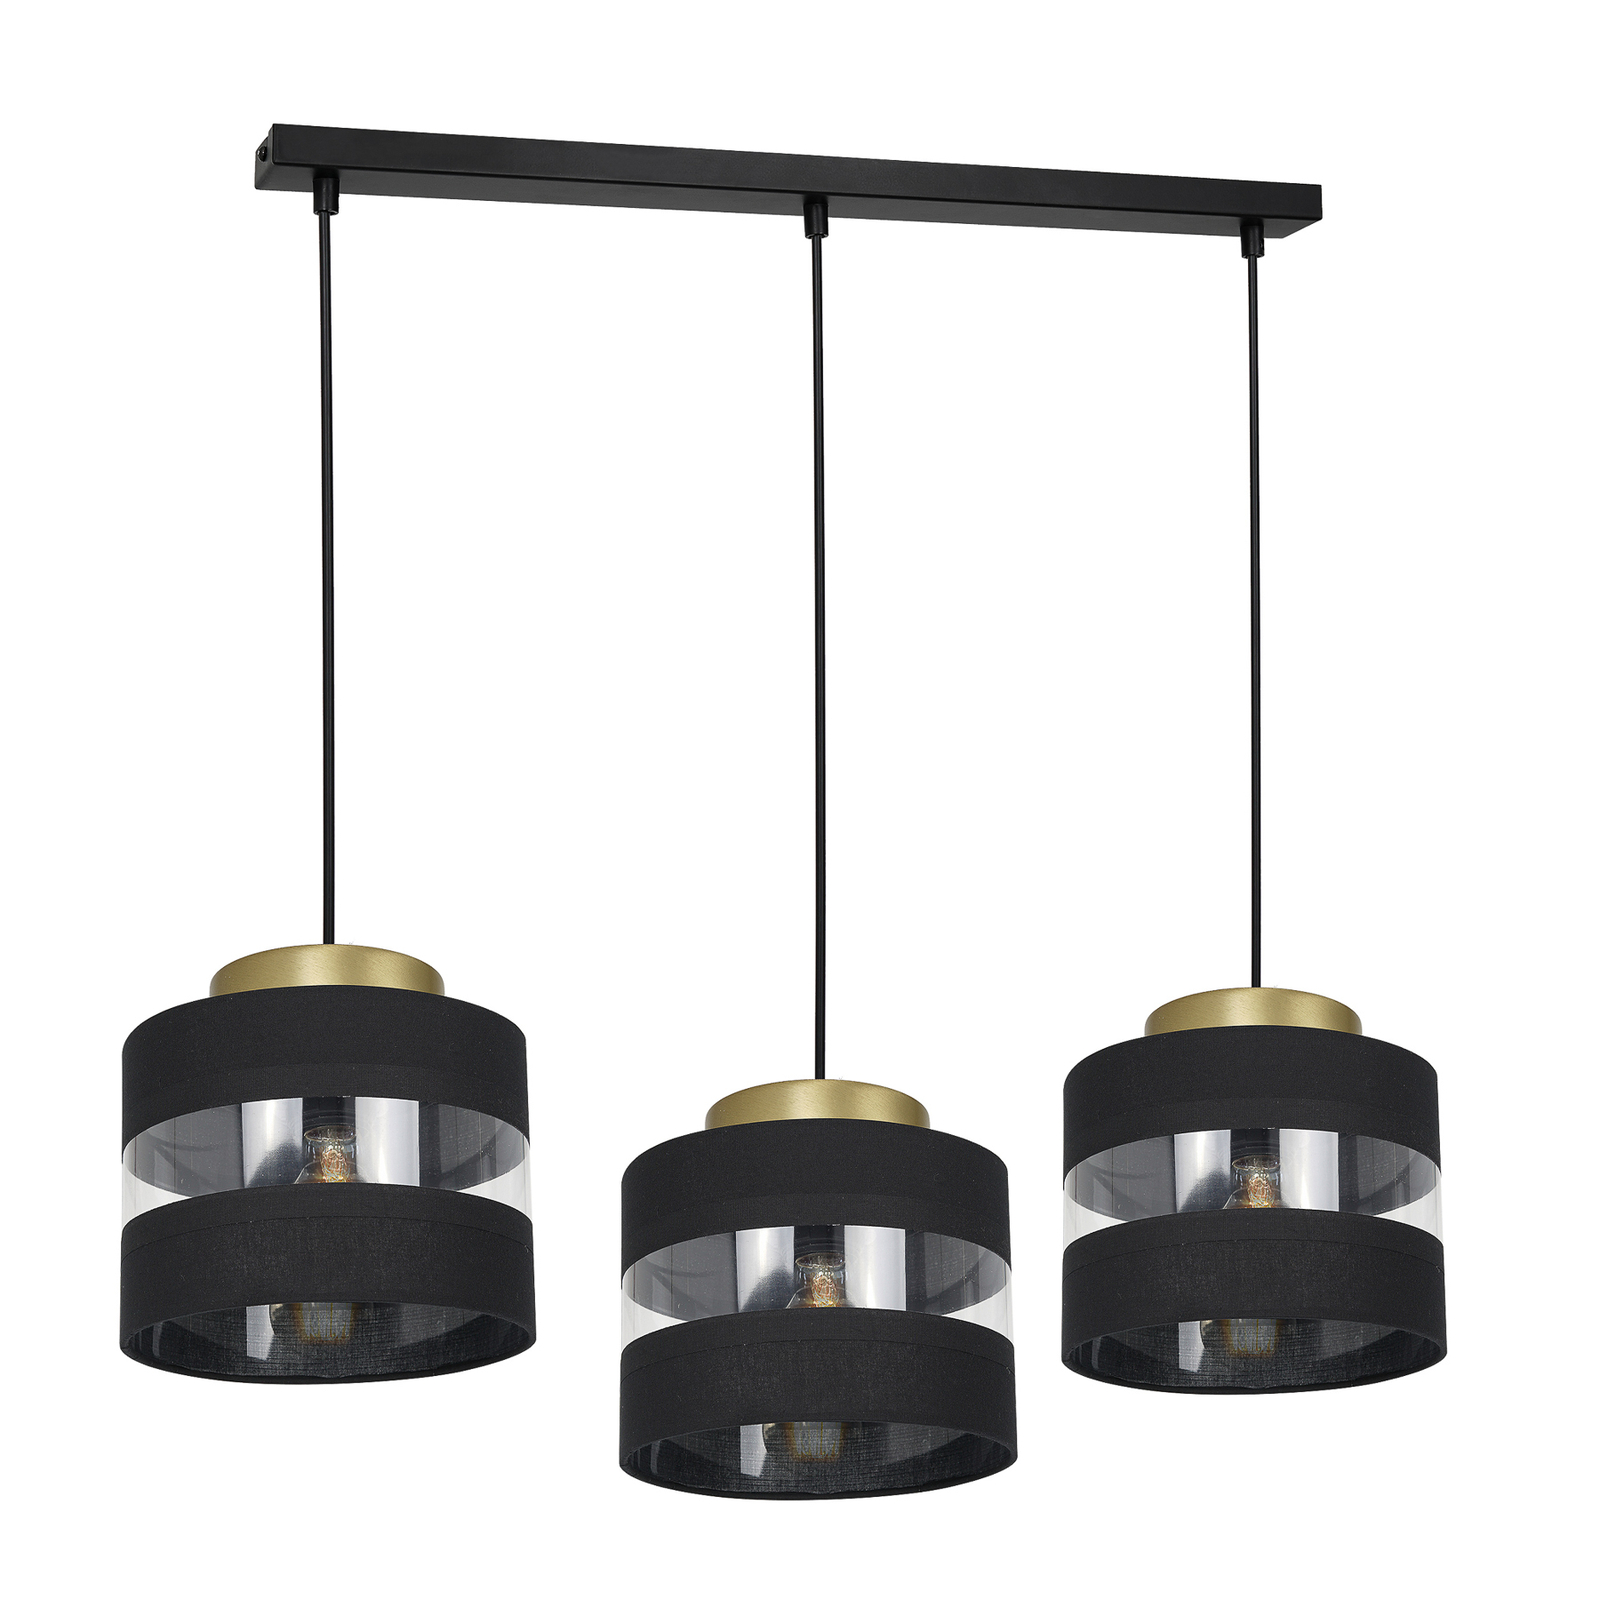 Hara hængelampe i sort/guld, 3 lyskilder, lang